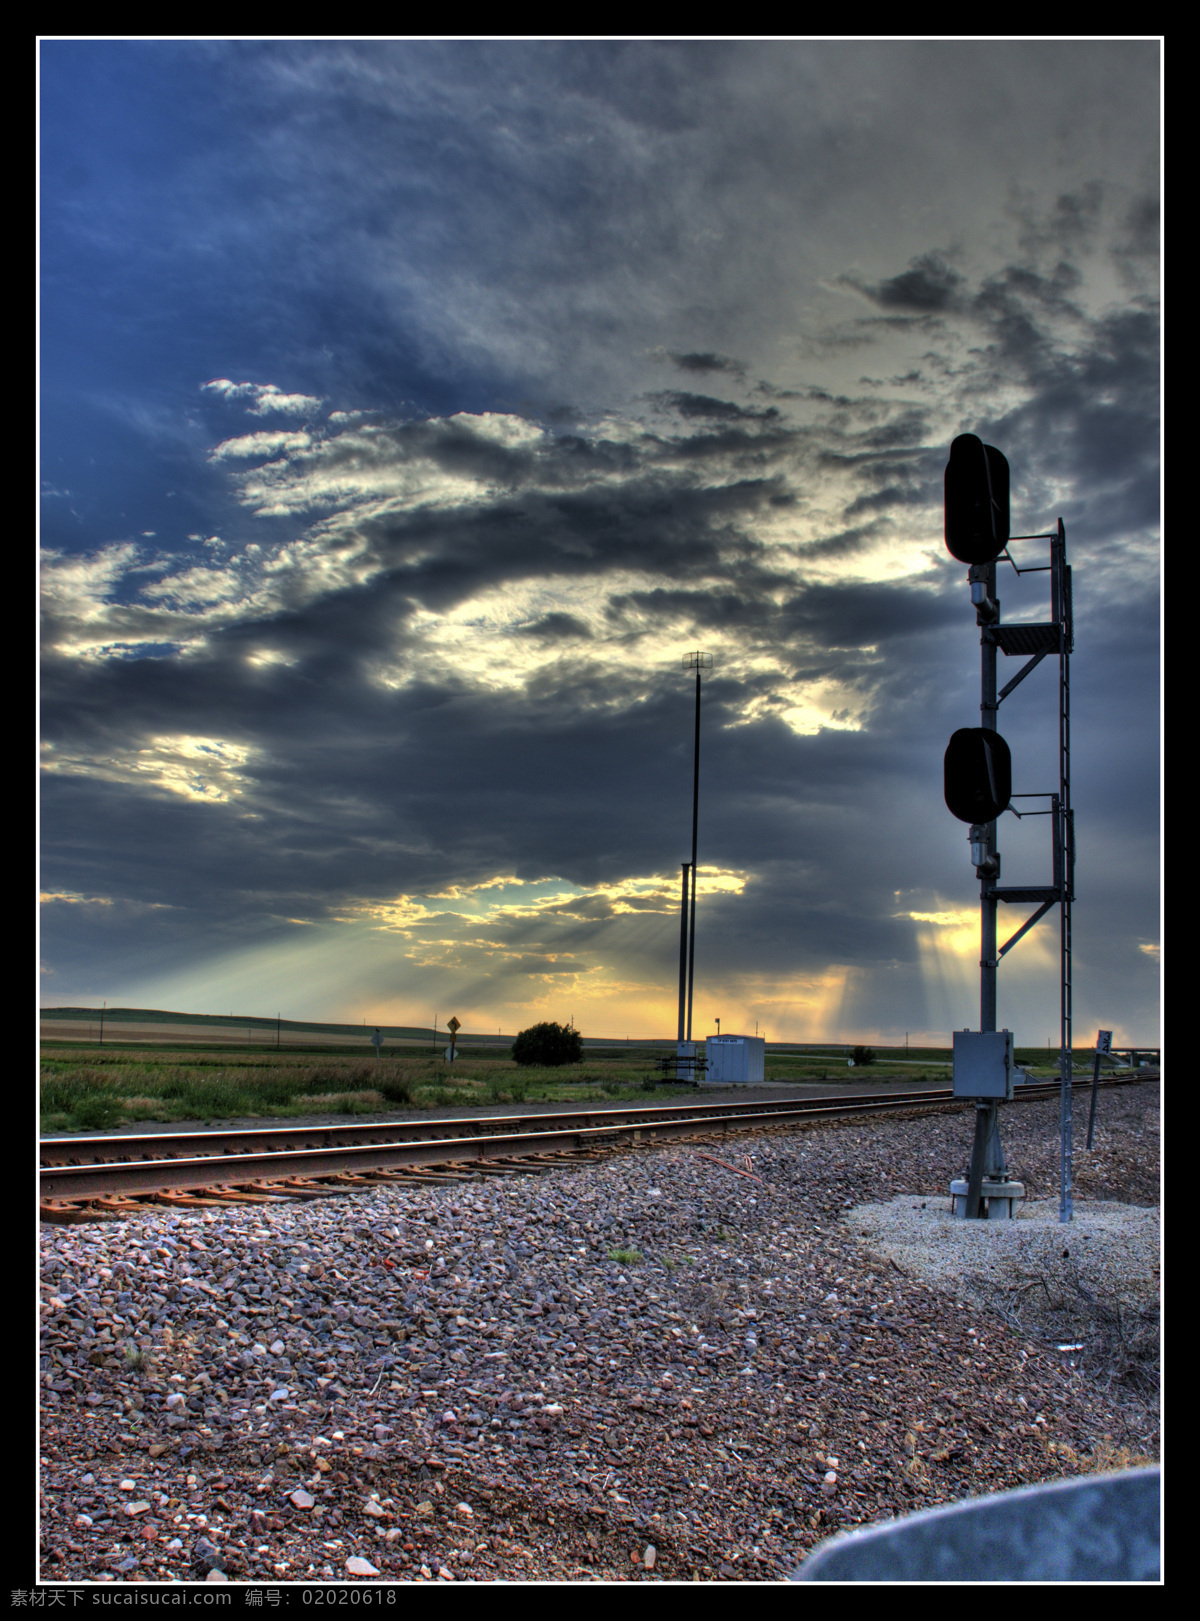 铁路 日出 剪影 国外旅游 旅游摄影 太阳 天空 铁轨 云 交通指示灯 照射 装饰素材 灯饰素材